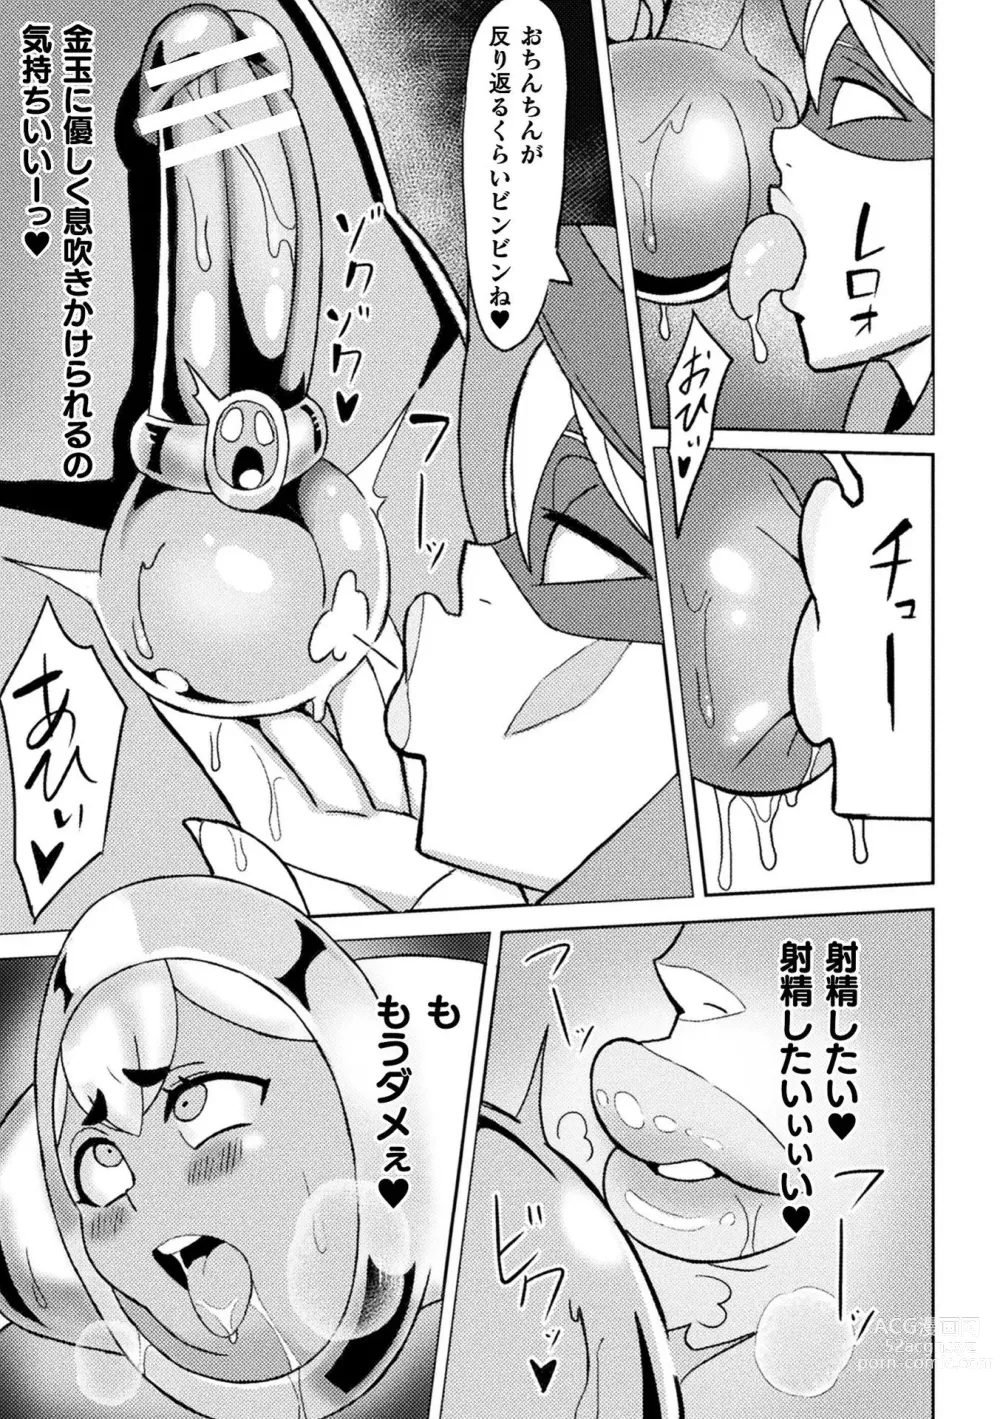 Page 75 of manga Bessatsu Comic Unreal Joutai Henka & Nikutai Kaizou Hen Vol. 1